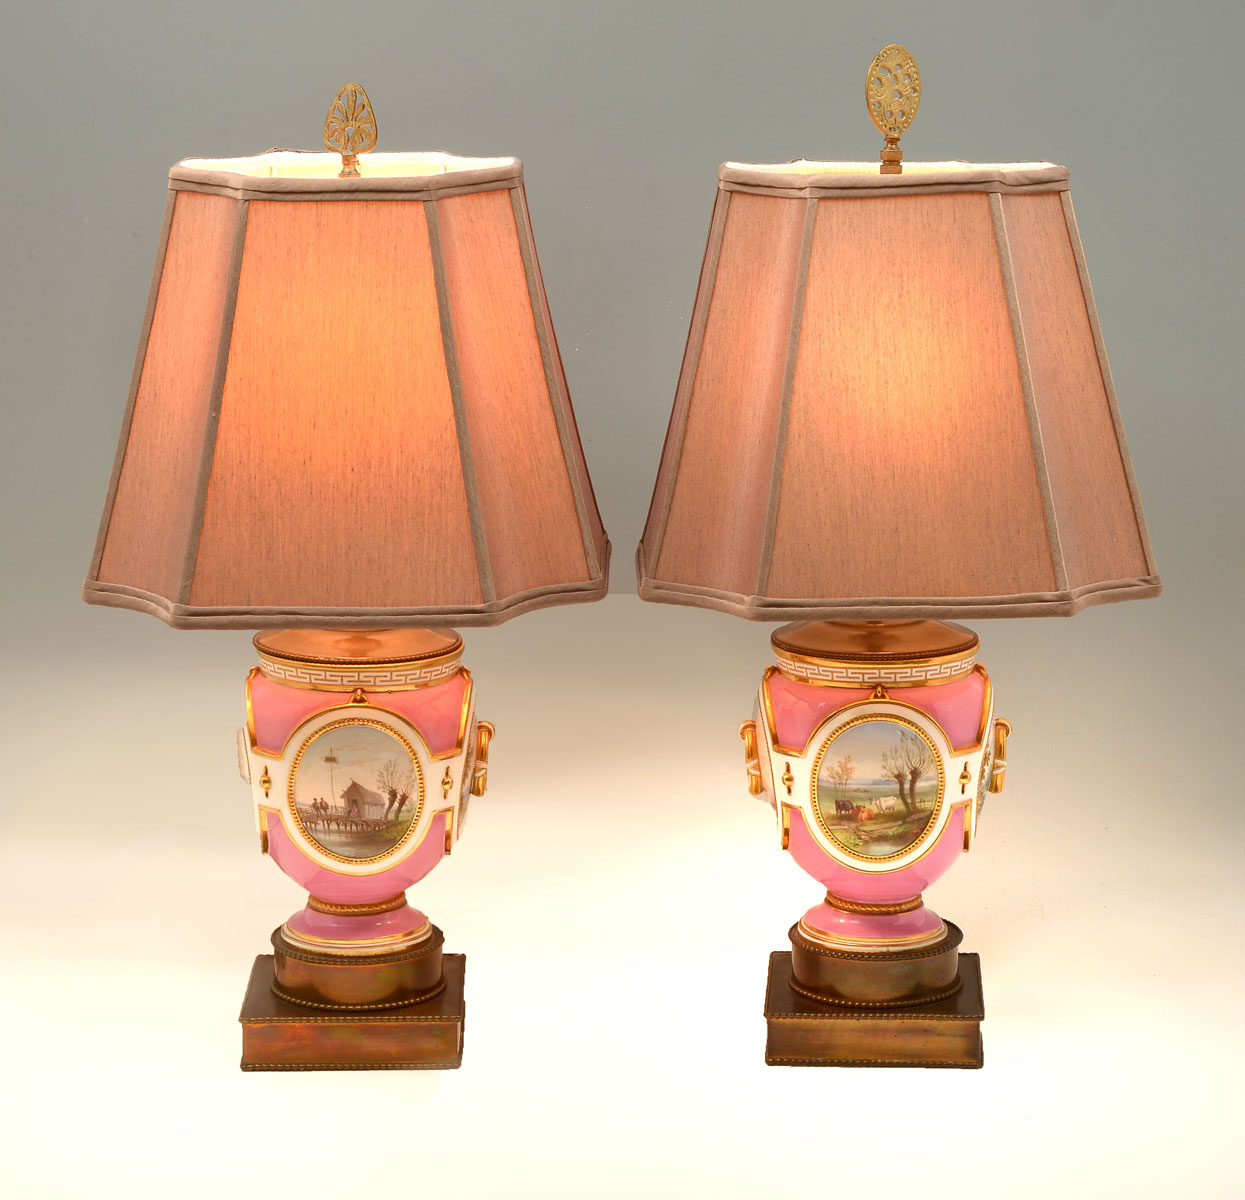 PR OLD PARIS PARLOR LAMPS: Pink